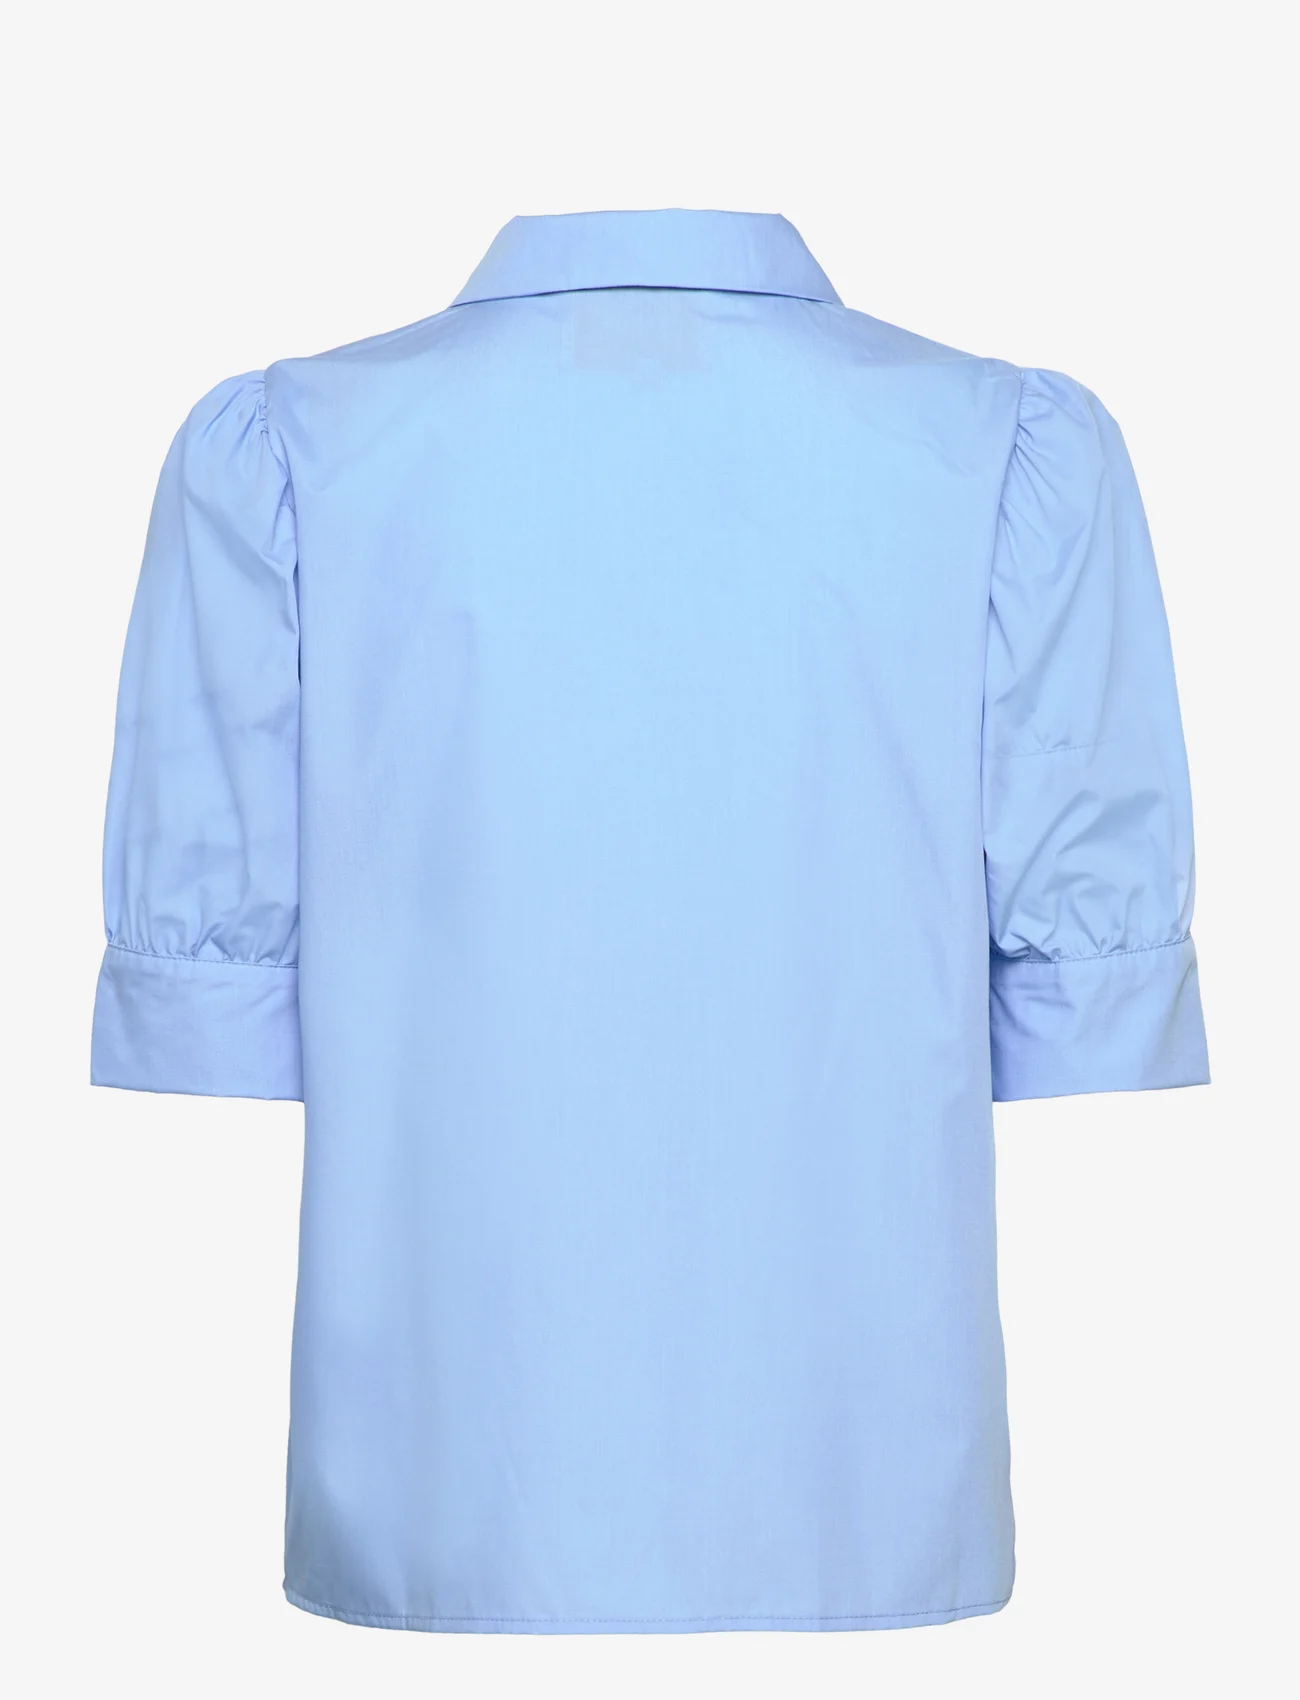 Minus - Molia Skjorte - kortermede skjorter - blue bonnet - 1